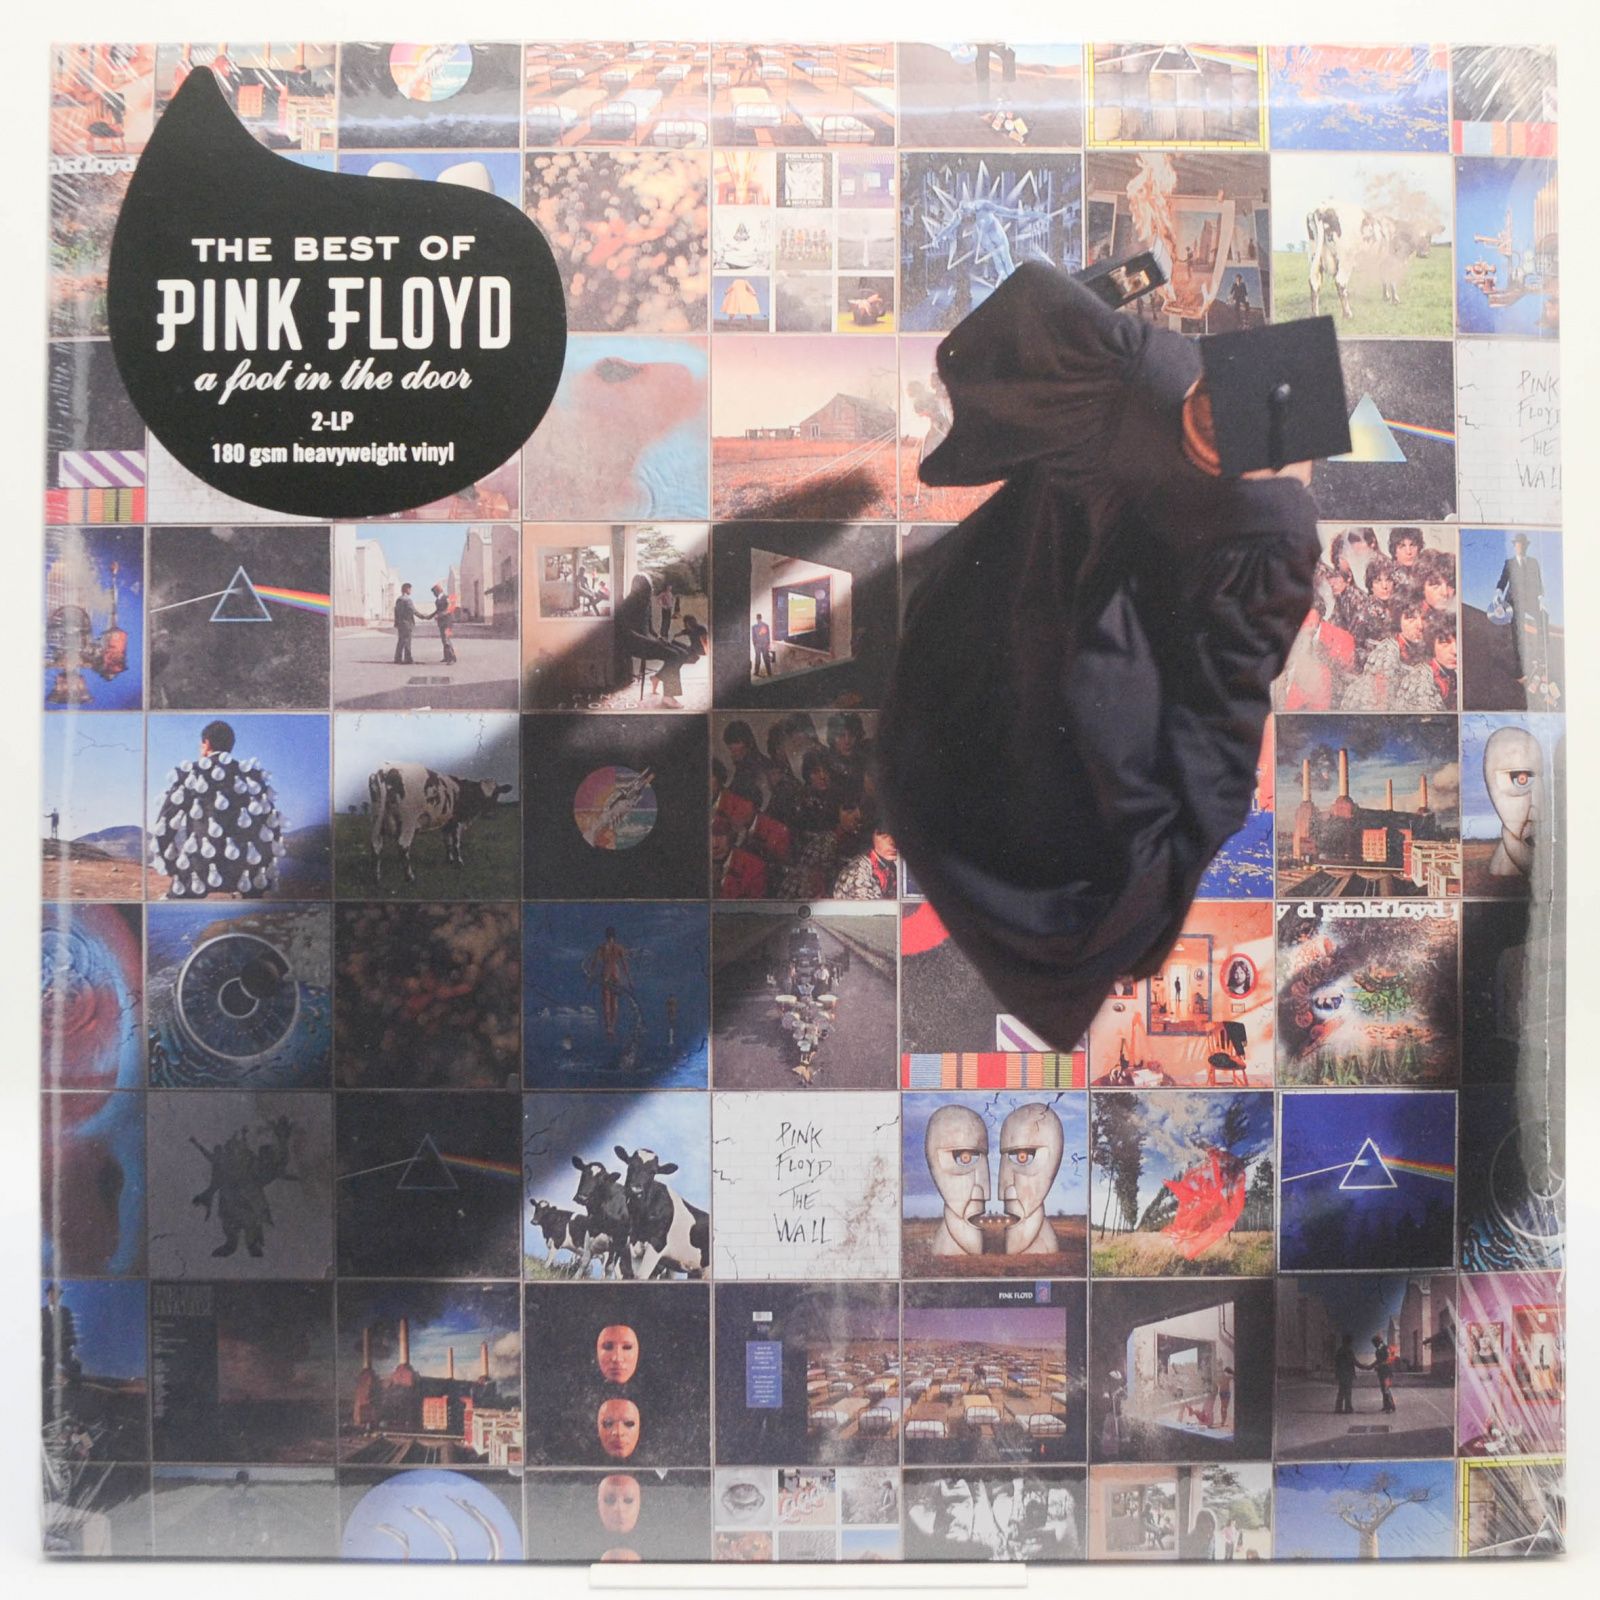 A Foot In The Door (The Best Of Pink Floyd) (2LP), 2011